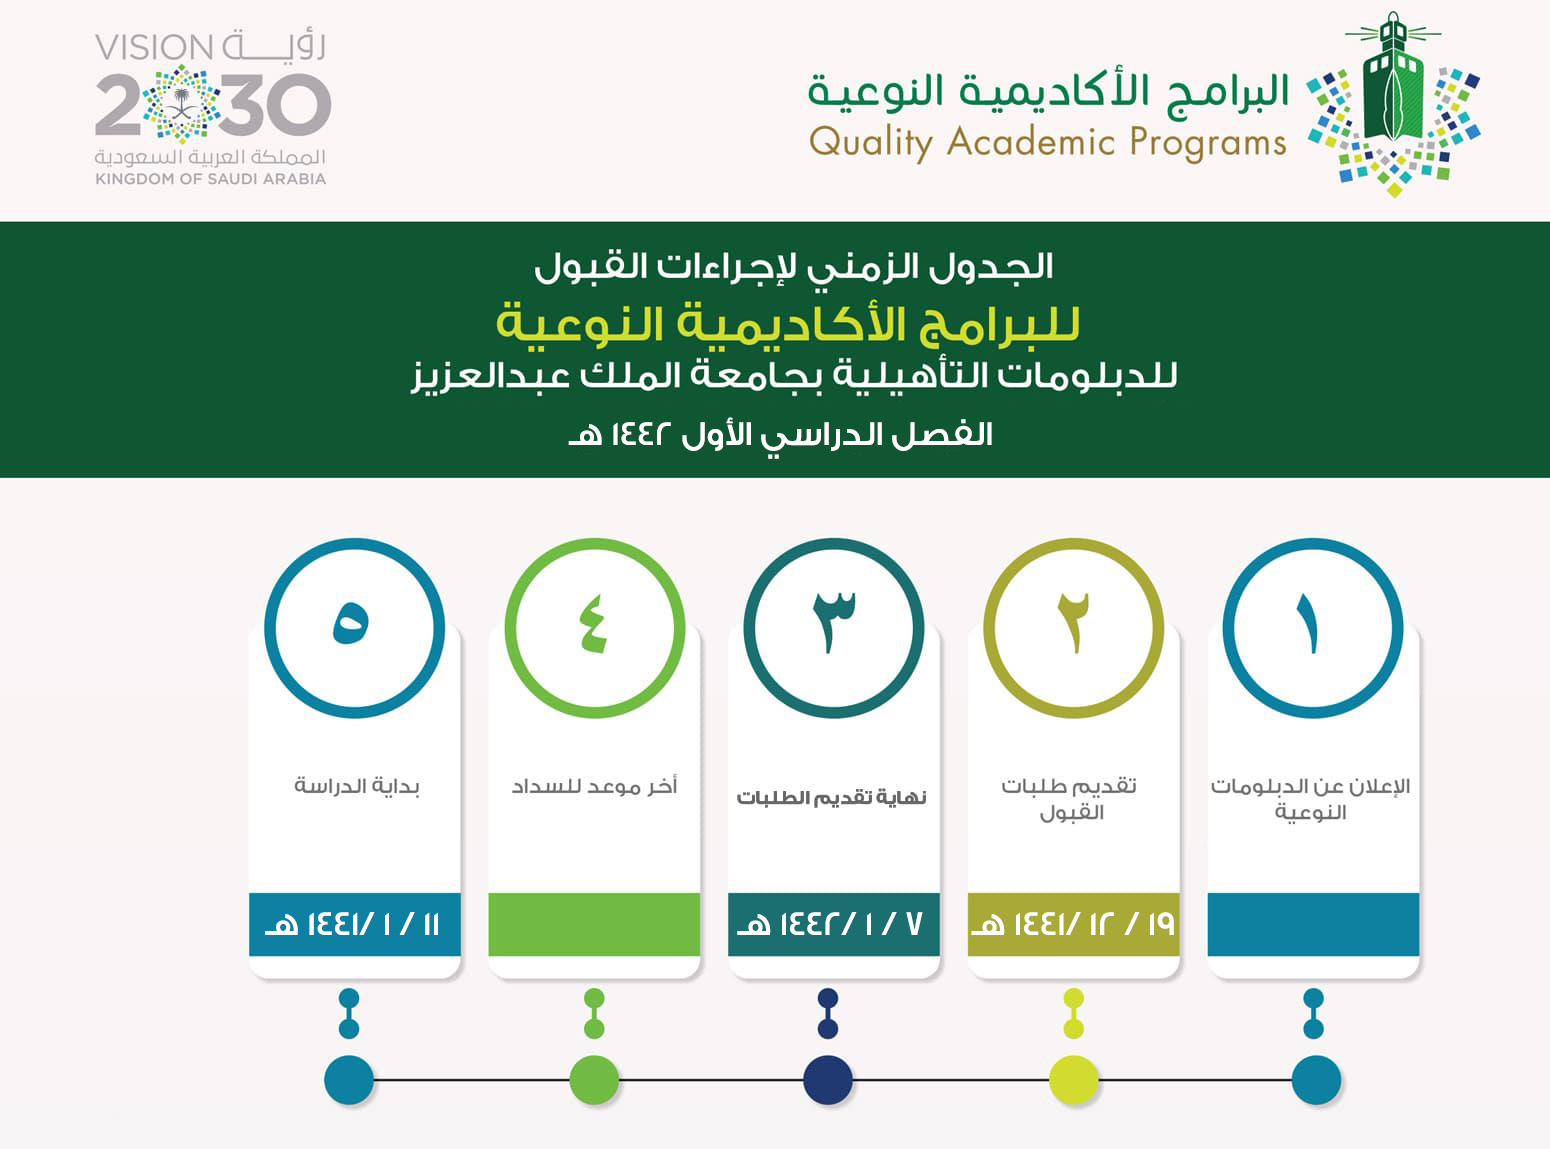 البرامج الاكاديمية النوعية بجامعة الملك عبدالعزيز الدبلومات التاهيلية